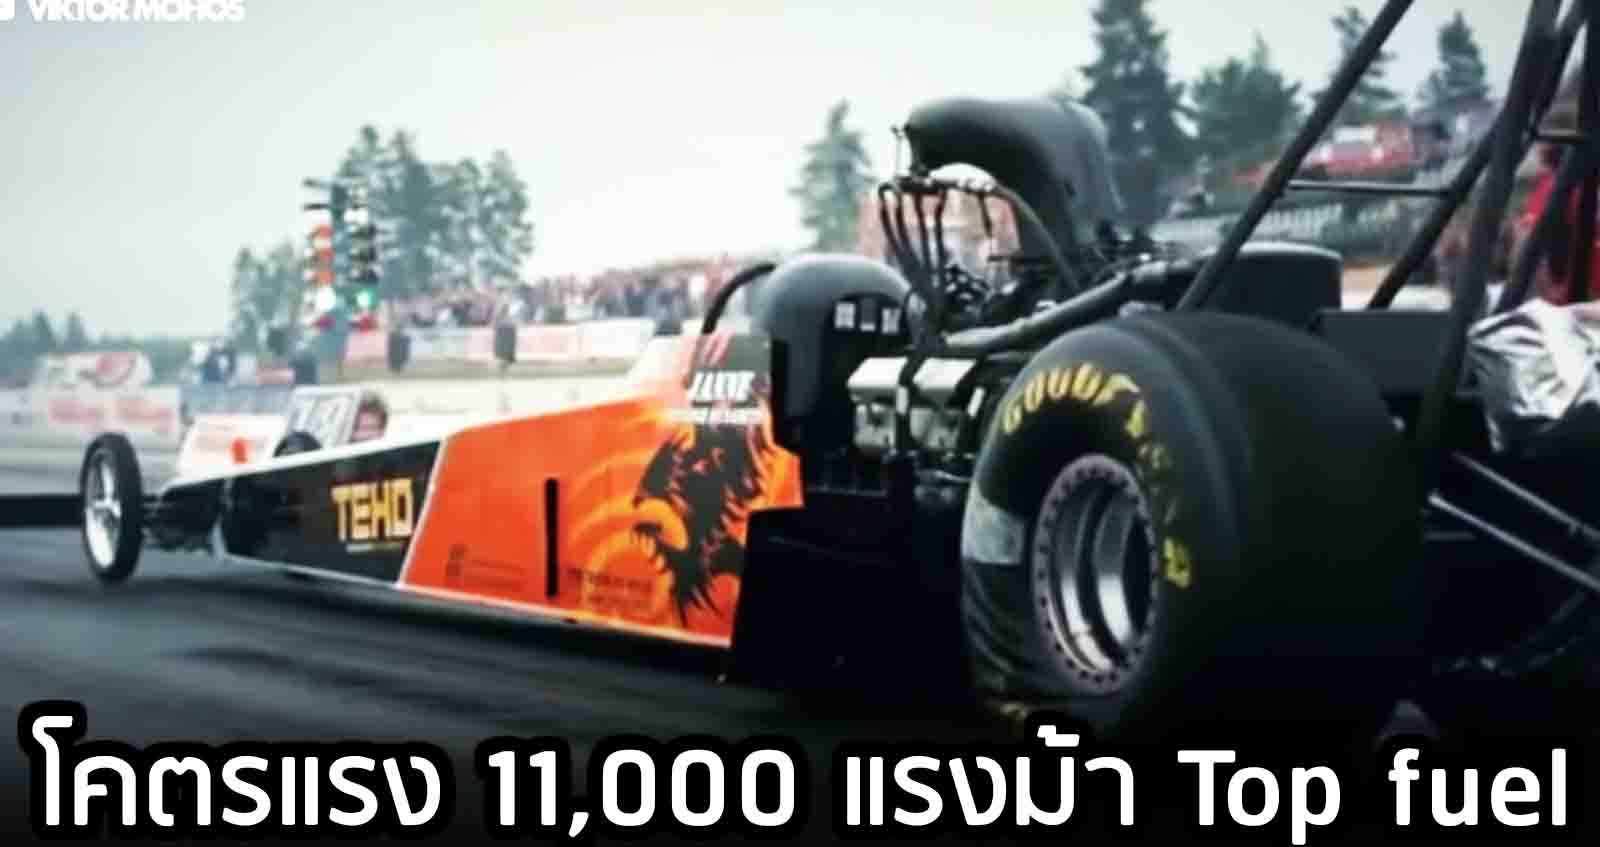 Top Fuel Dragsters 11,000 แรงม้า การแข่งขันจุดสูงสุดของเครื่องยนต์